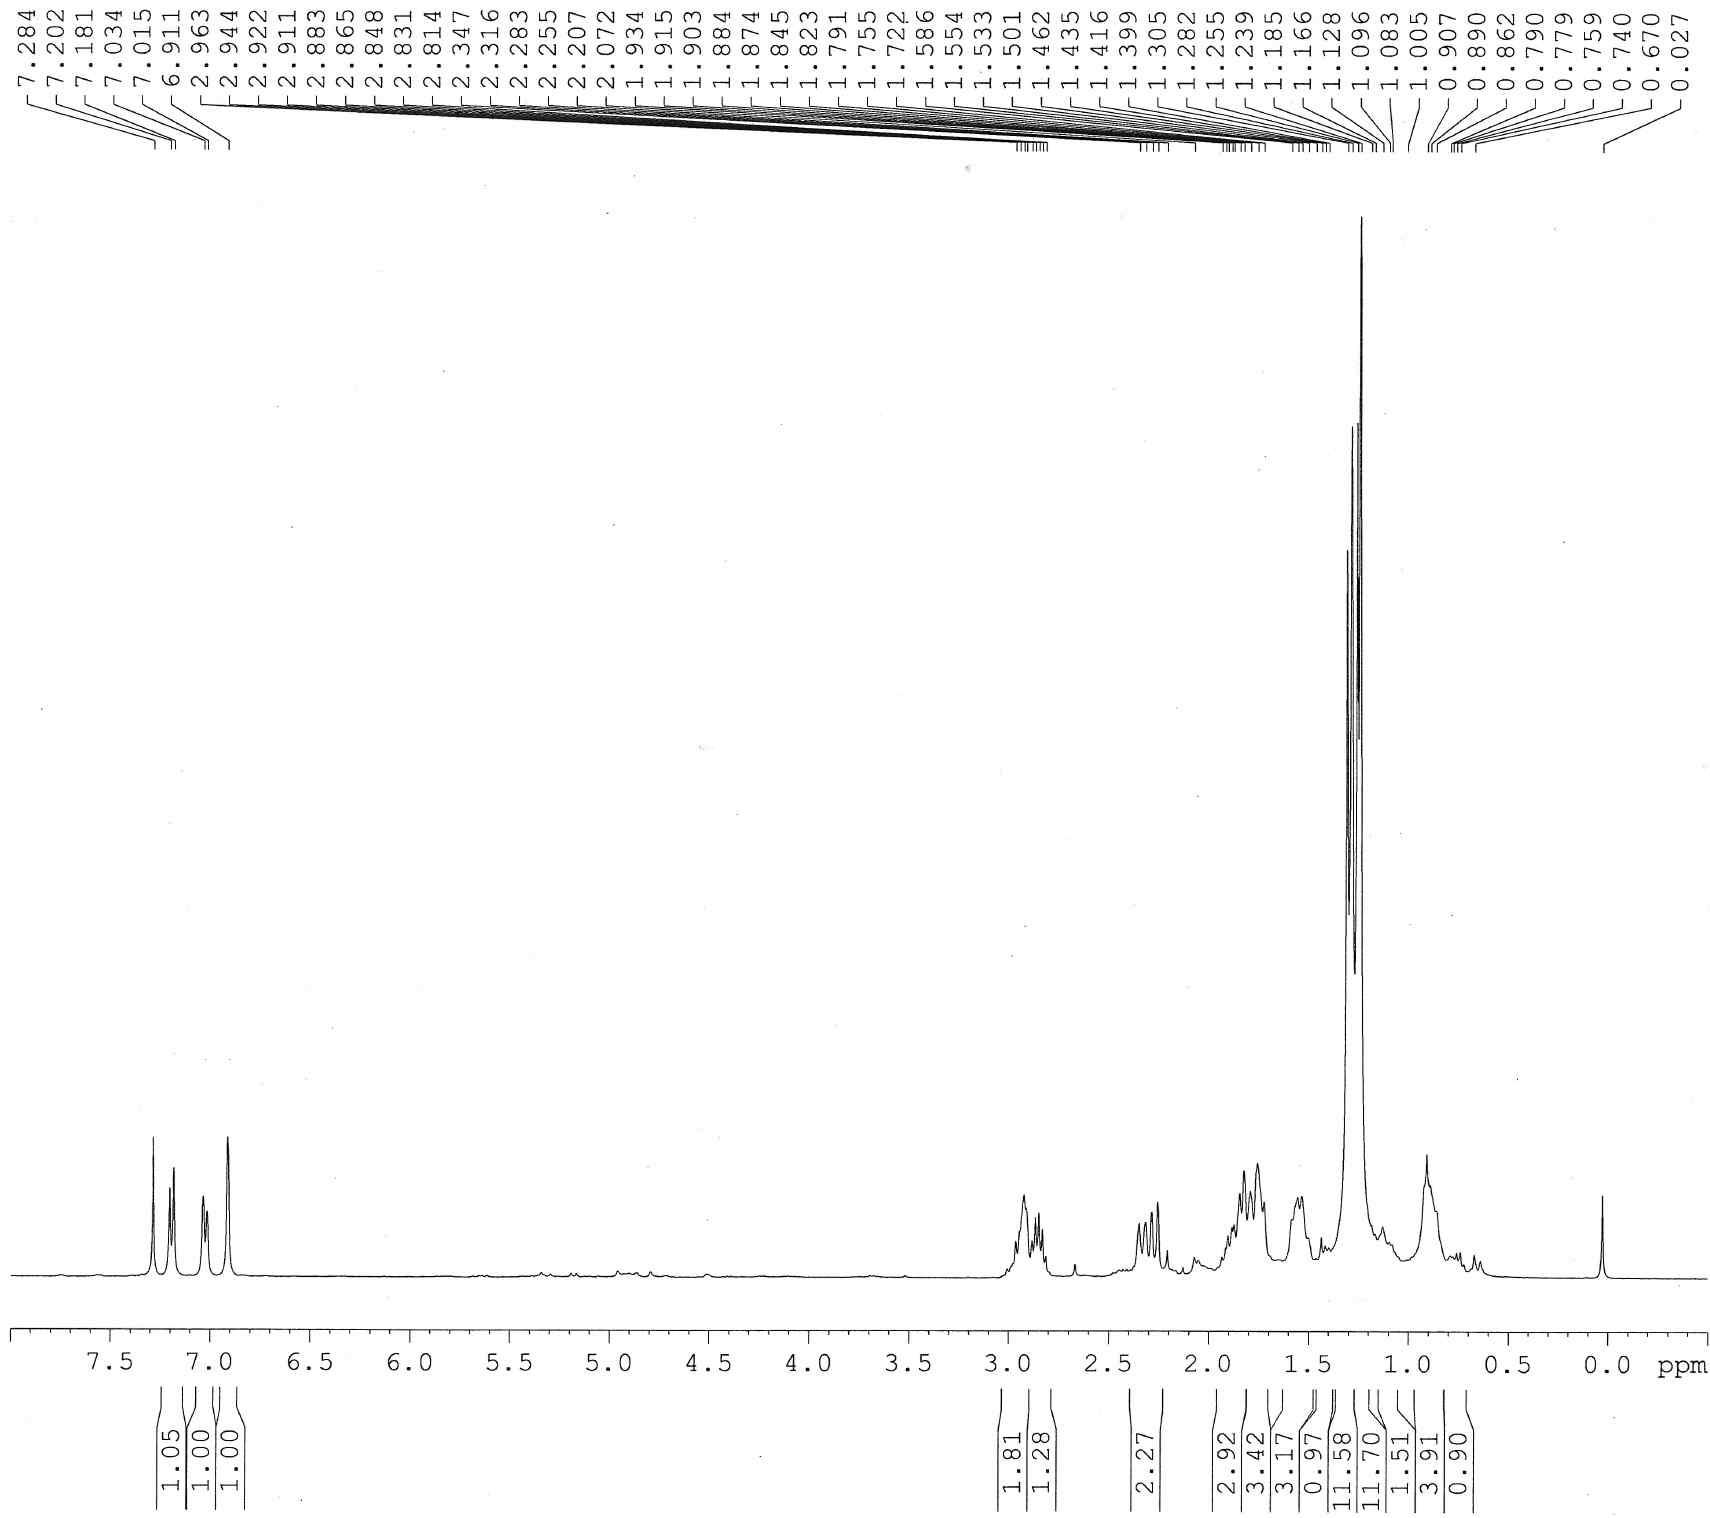 1H-NMR spectrum of compound 9